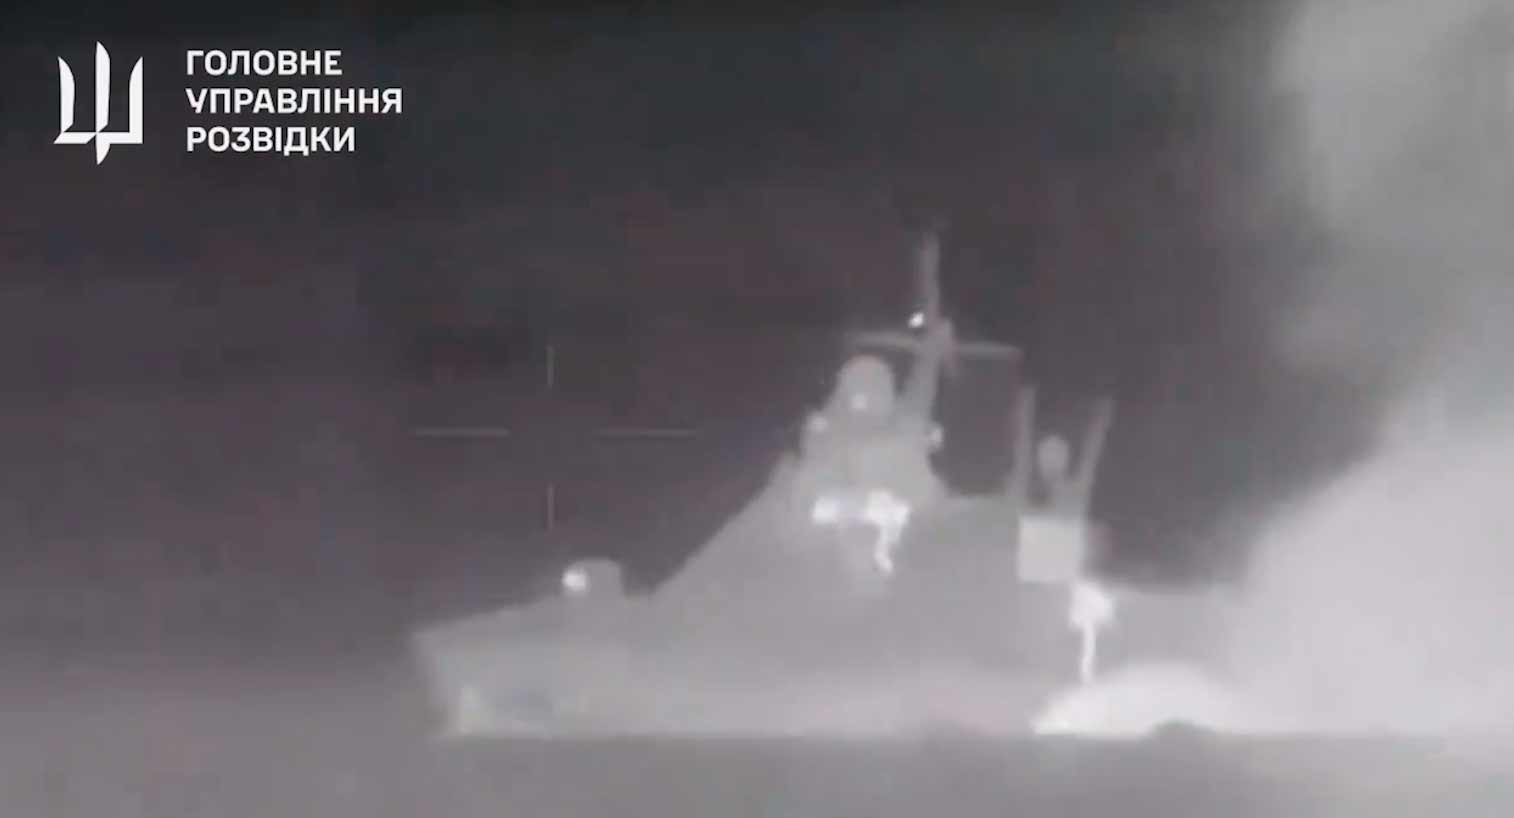 Novo vídeo mostra explosão que afundou o navio russo Sergey Kotov. Reprodução Twitter @wartranslated